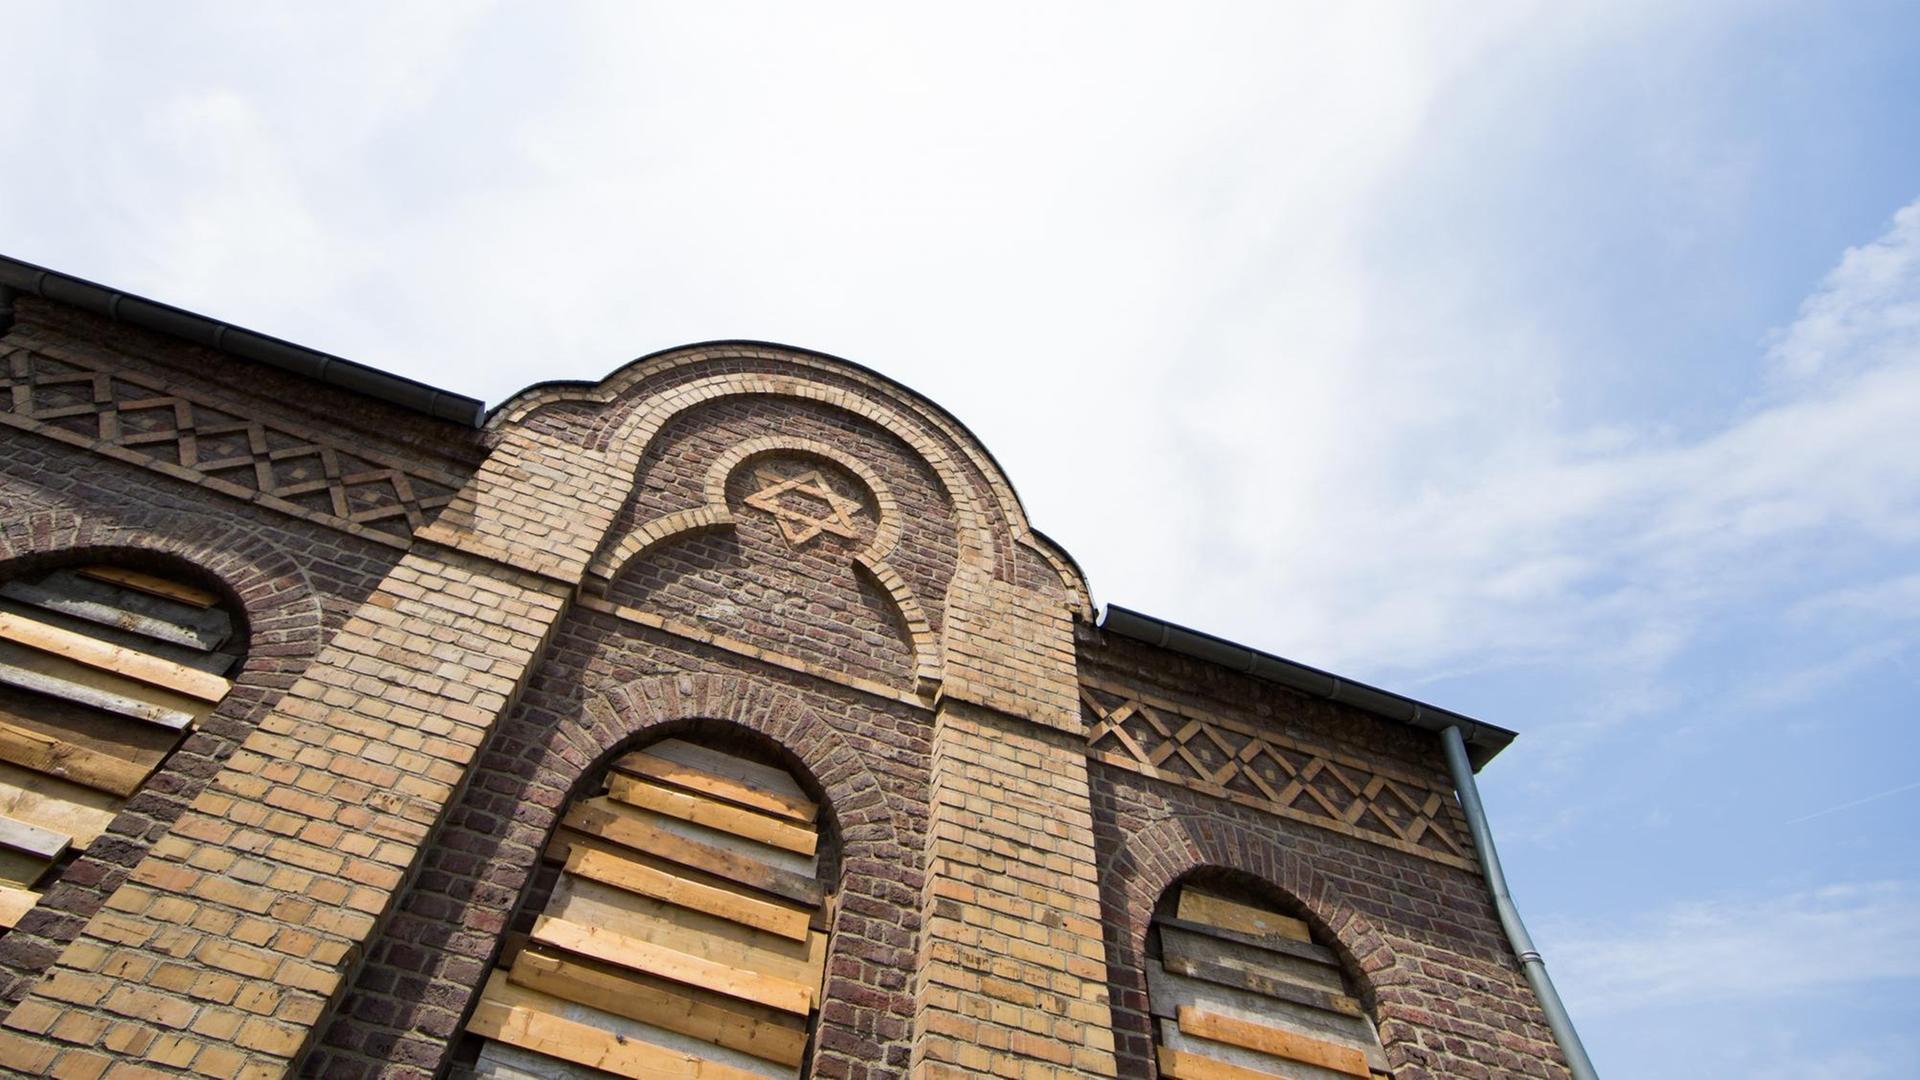 Im Rahmen des internationalen Kunstprojekts "Synagoge Stommeln" hat der im Libanon geborene Künstler Walid Raad 2016 die ehemalige Synagoge in Pulheim-Stommeln für mehrere Monate mit Erde aufgeschüttet und die Fenster mit Holzlatten vernagelt.